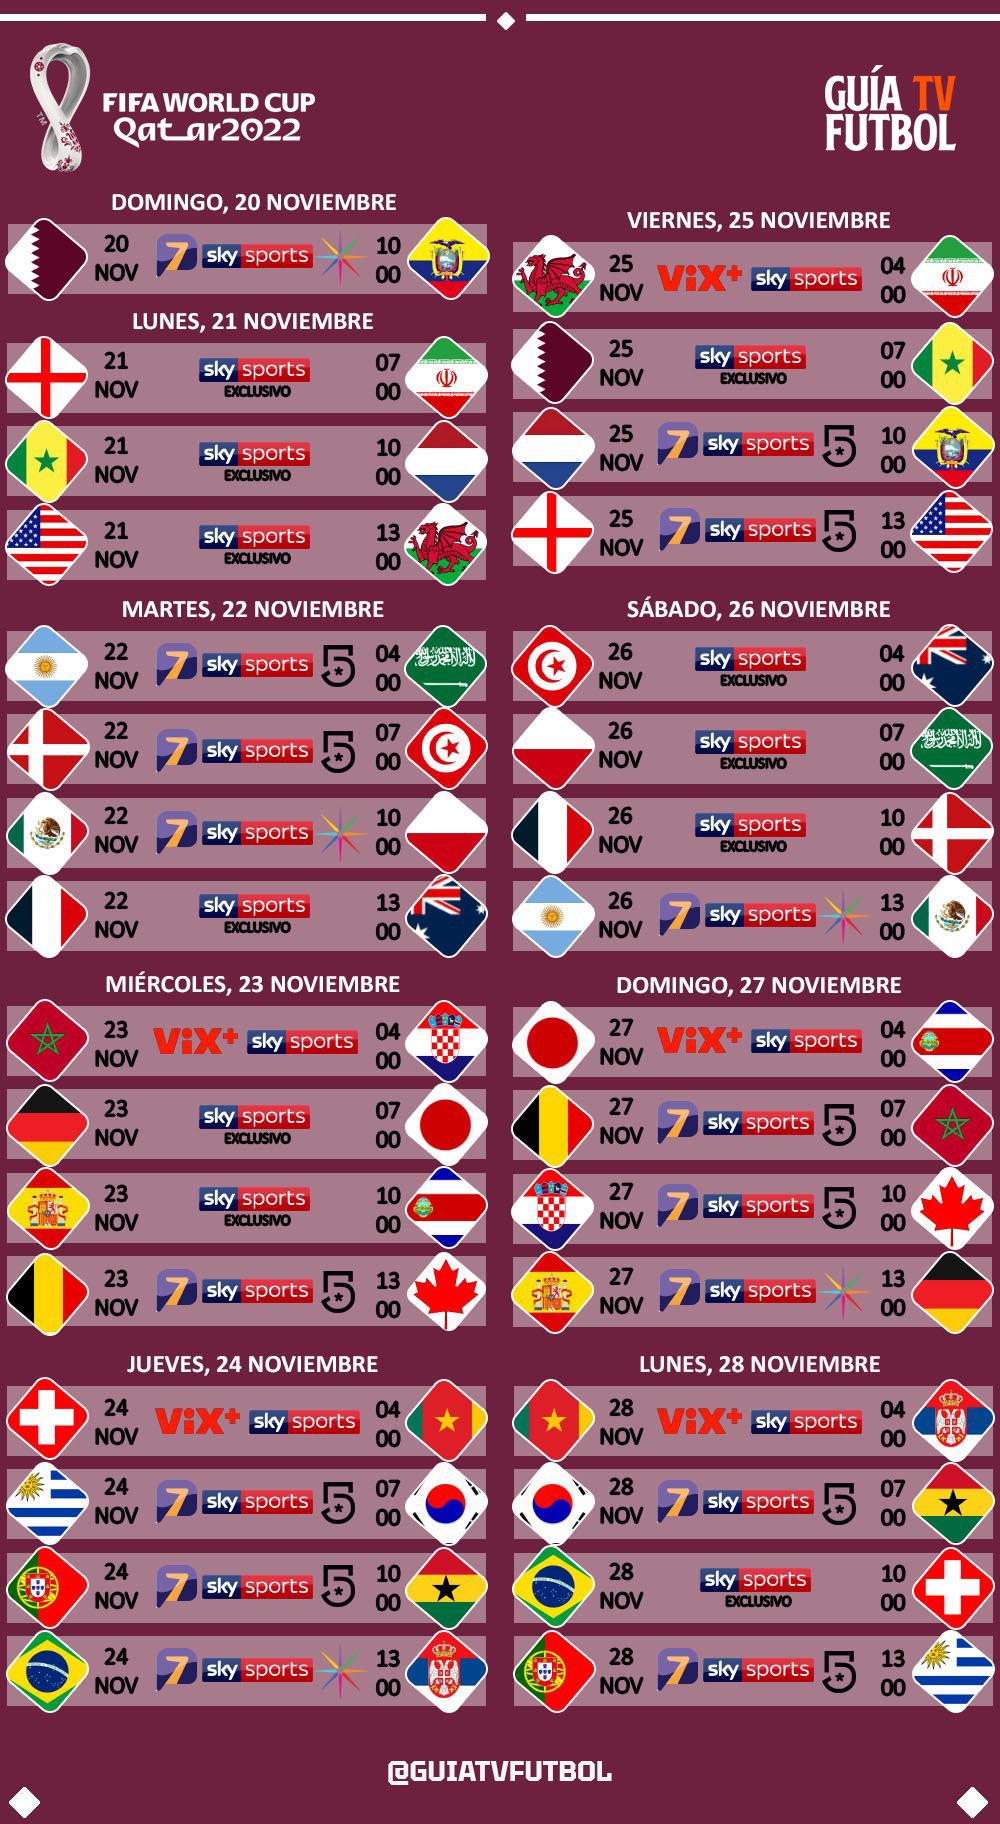 Agenda TV: Mundial Qatar 2022 - Fútbol En Vivo México - Guía TV Liga MX